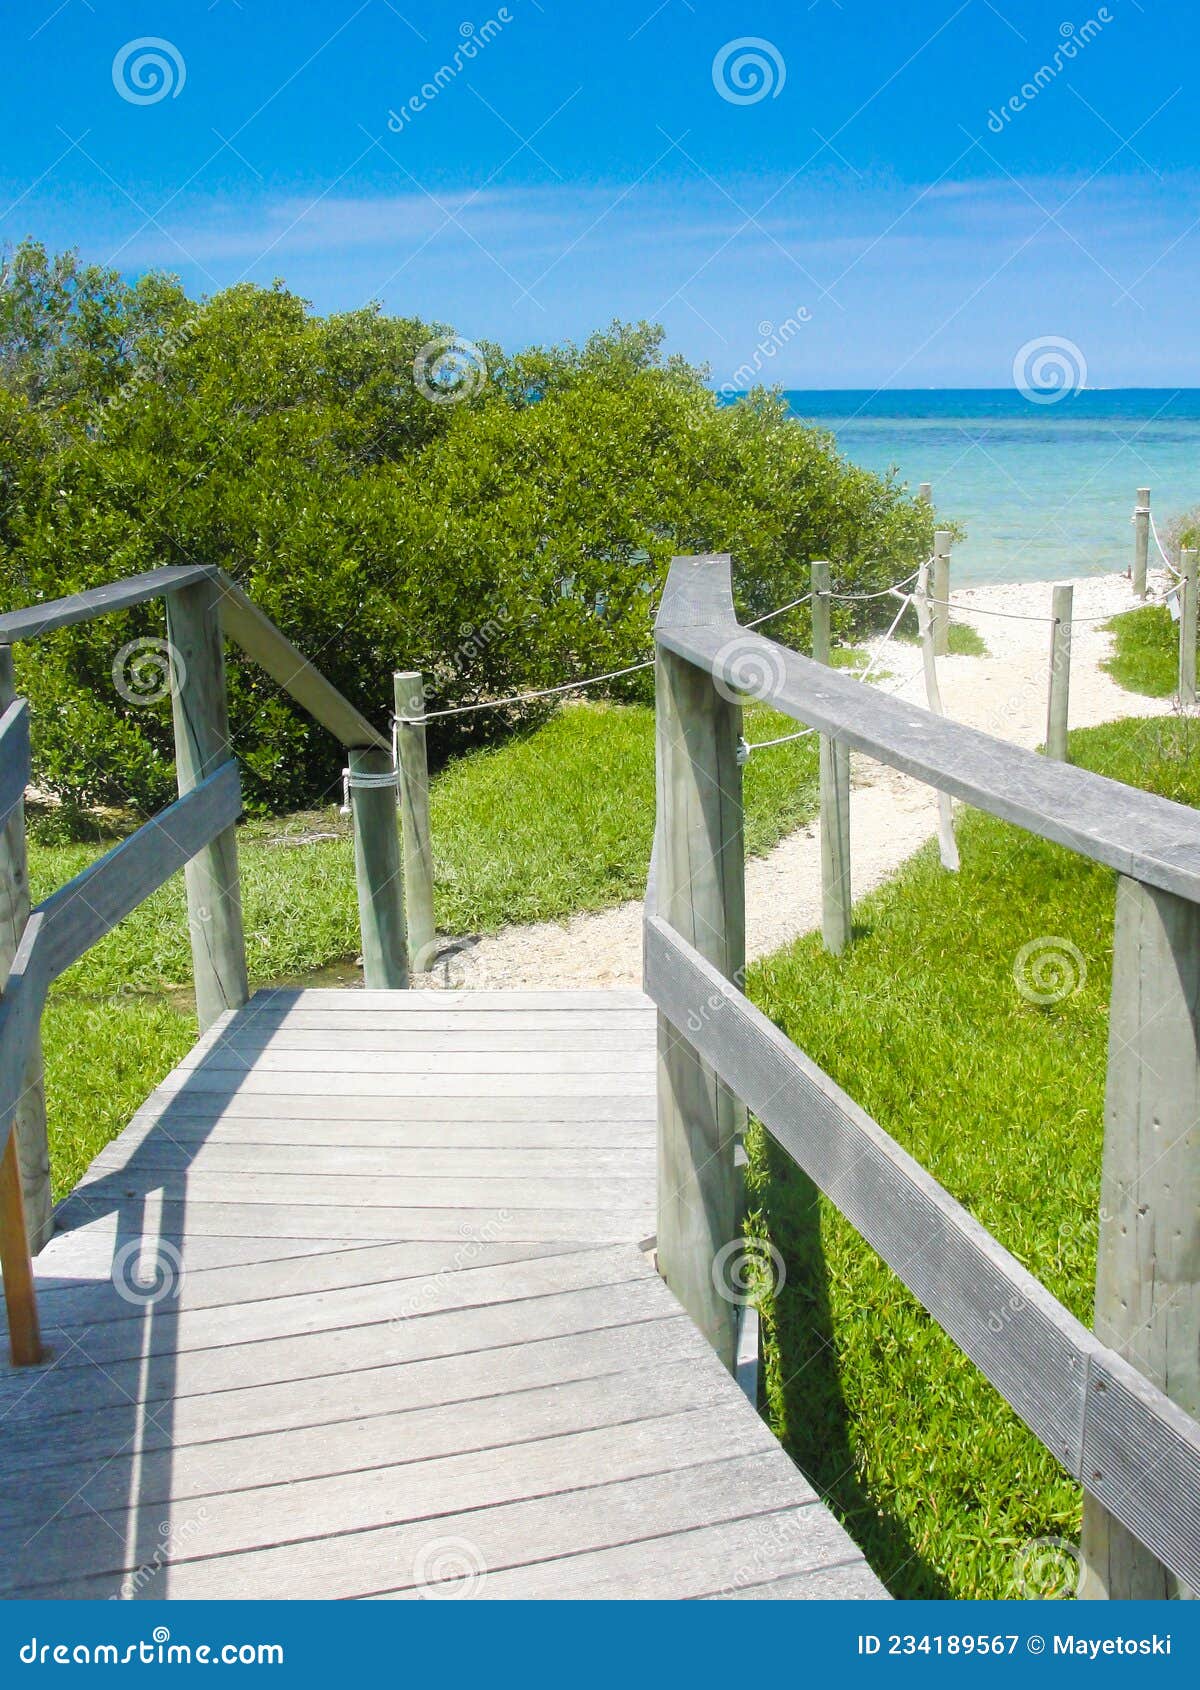 wooden pathway in white sand beach